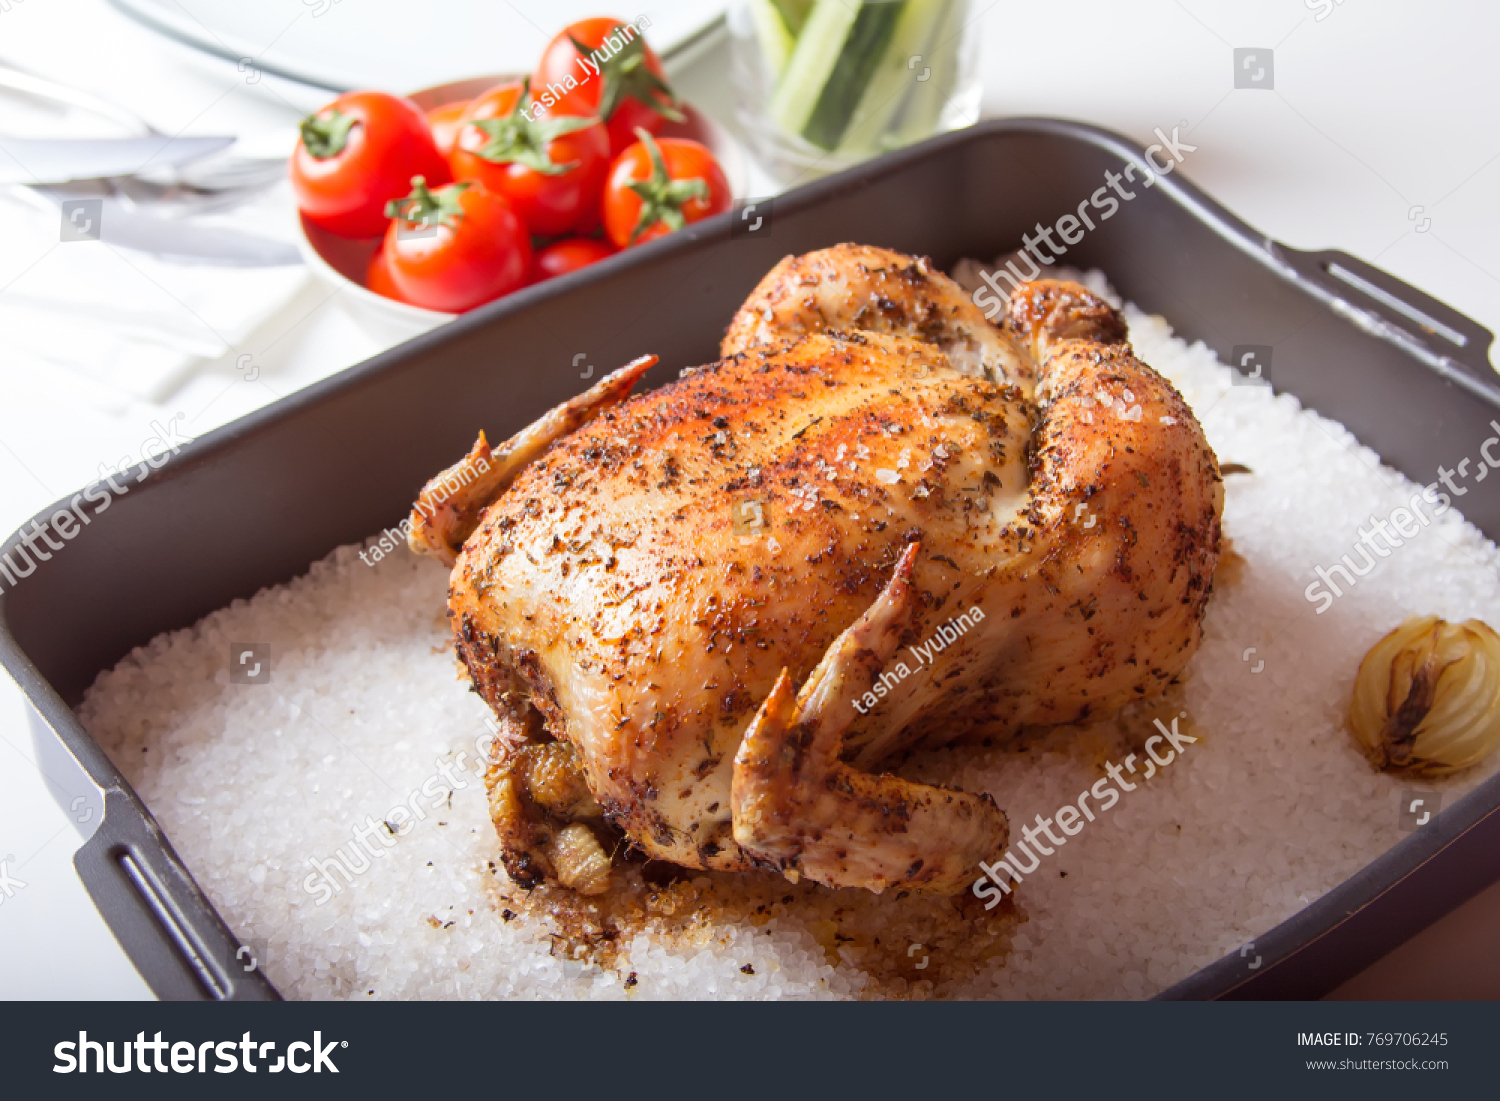 Курица запеченная на соли в духовке